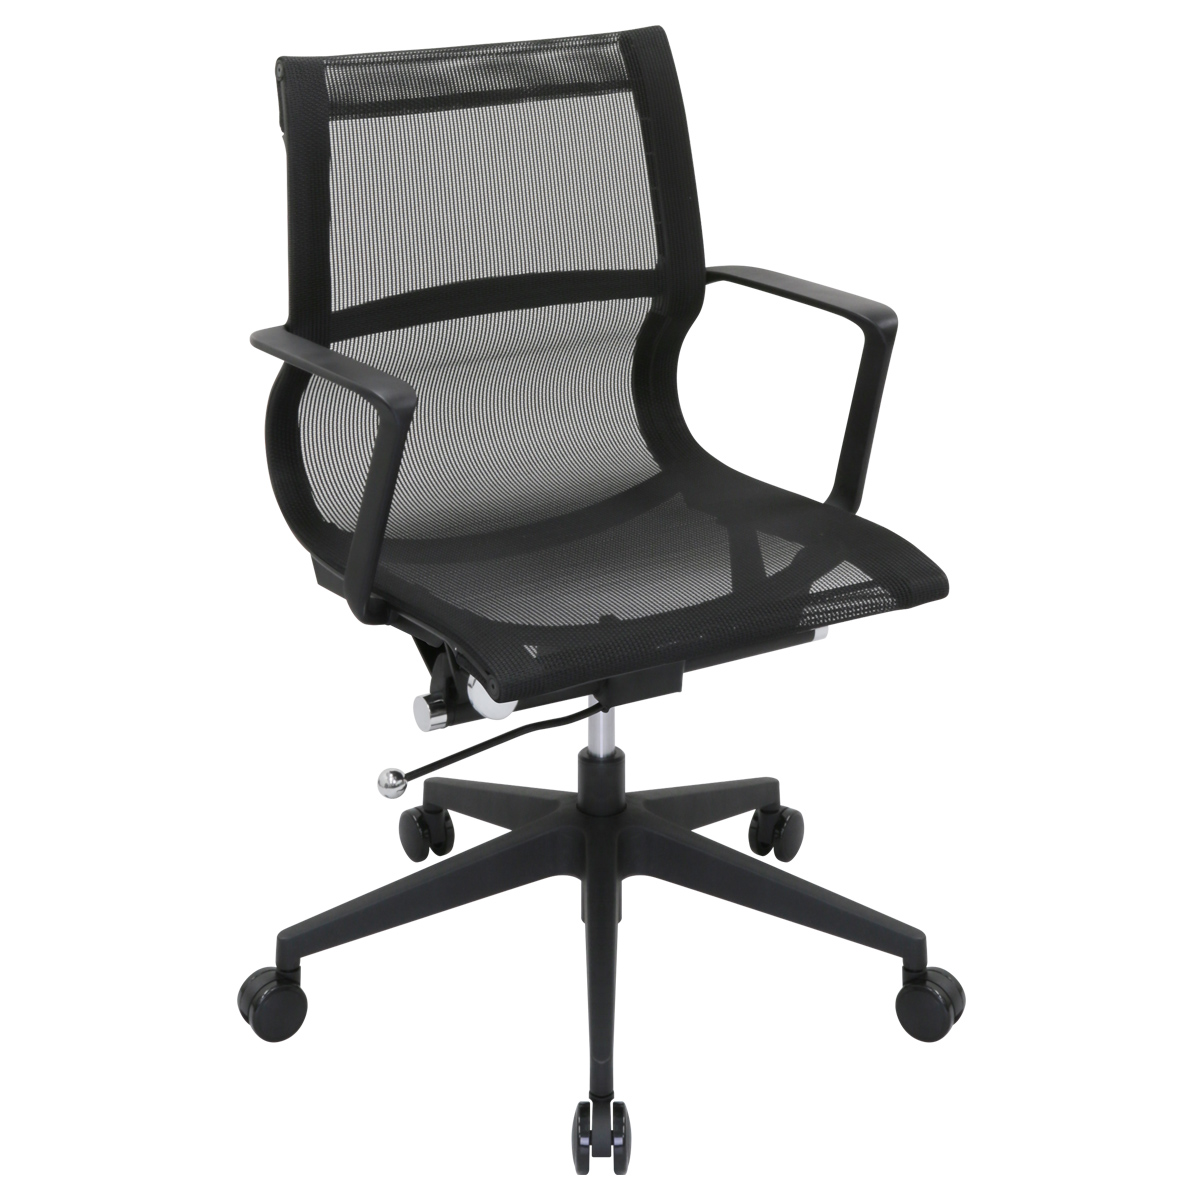 ビジネスチェアLU メッシュタイプ 幅560 奥行675 高さ900-1000 LU-6824M-BK 通販 オフィスチェア・事務椅子 オフィス 家具のカグクロ